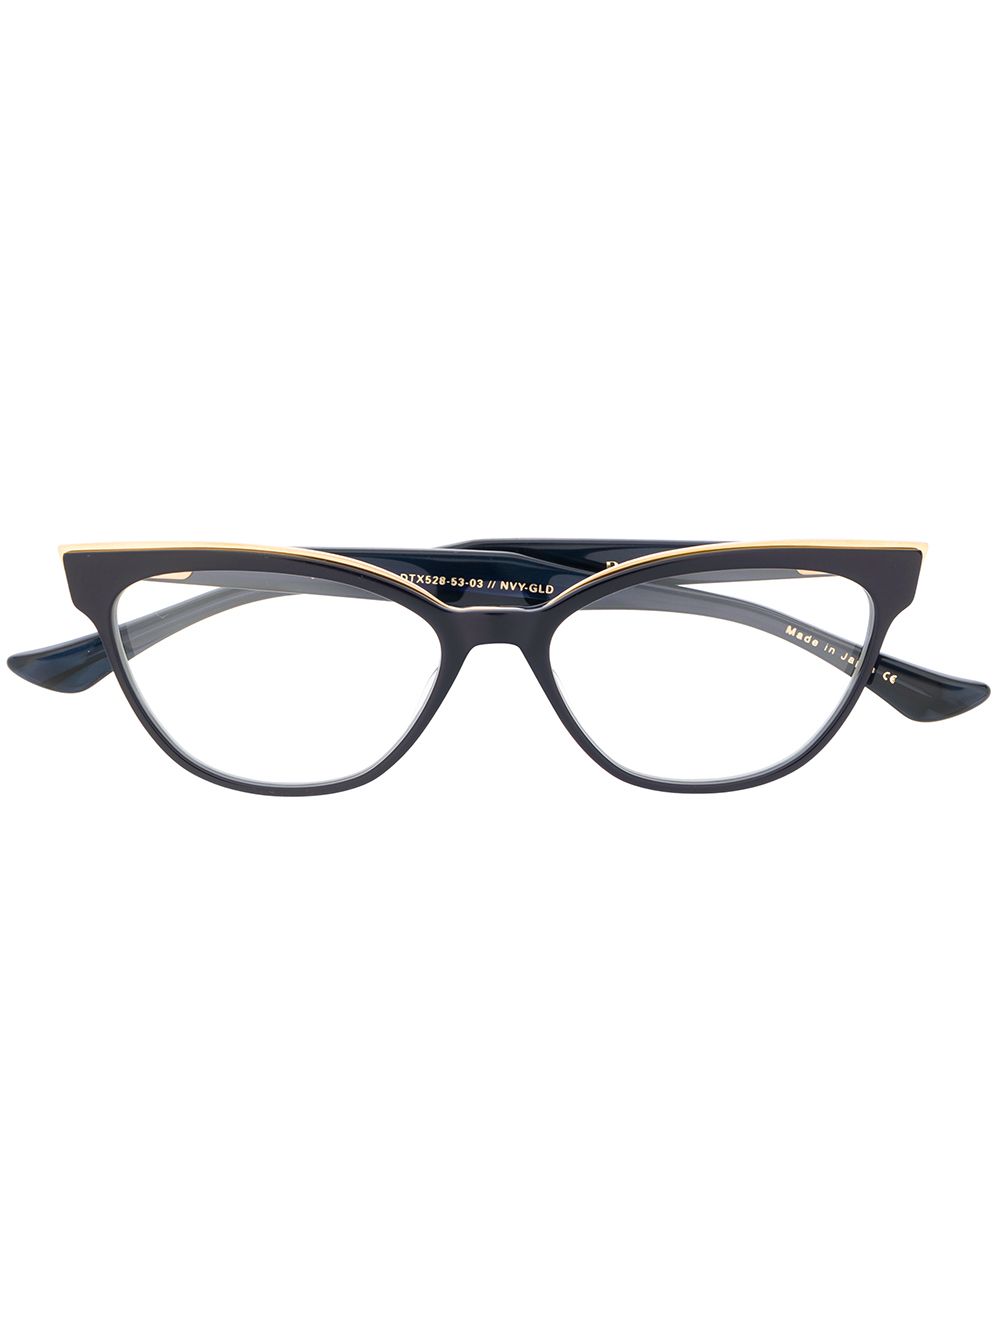 Ficta cat-eye glasses